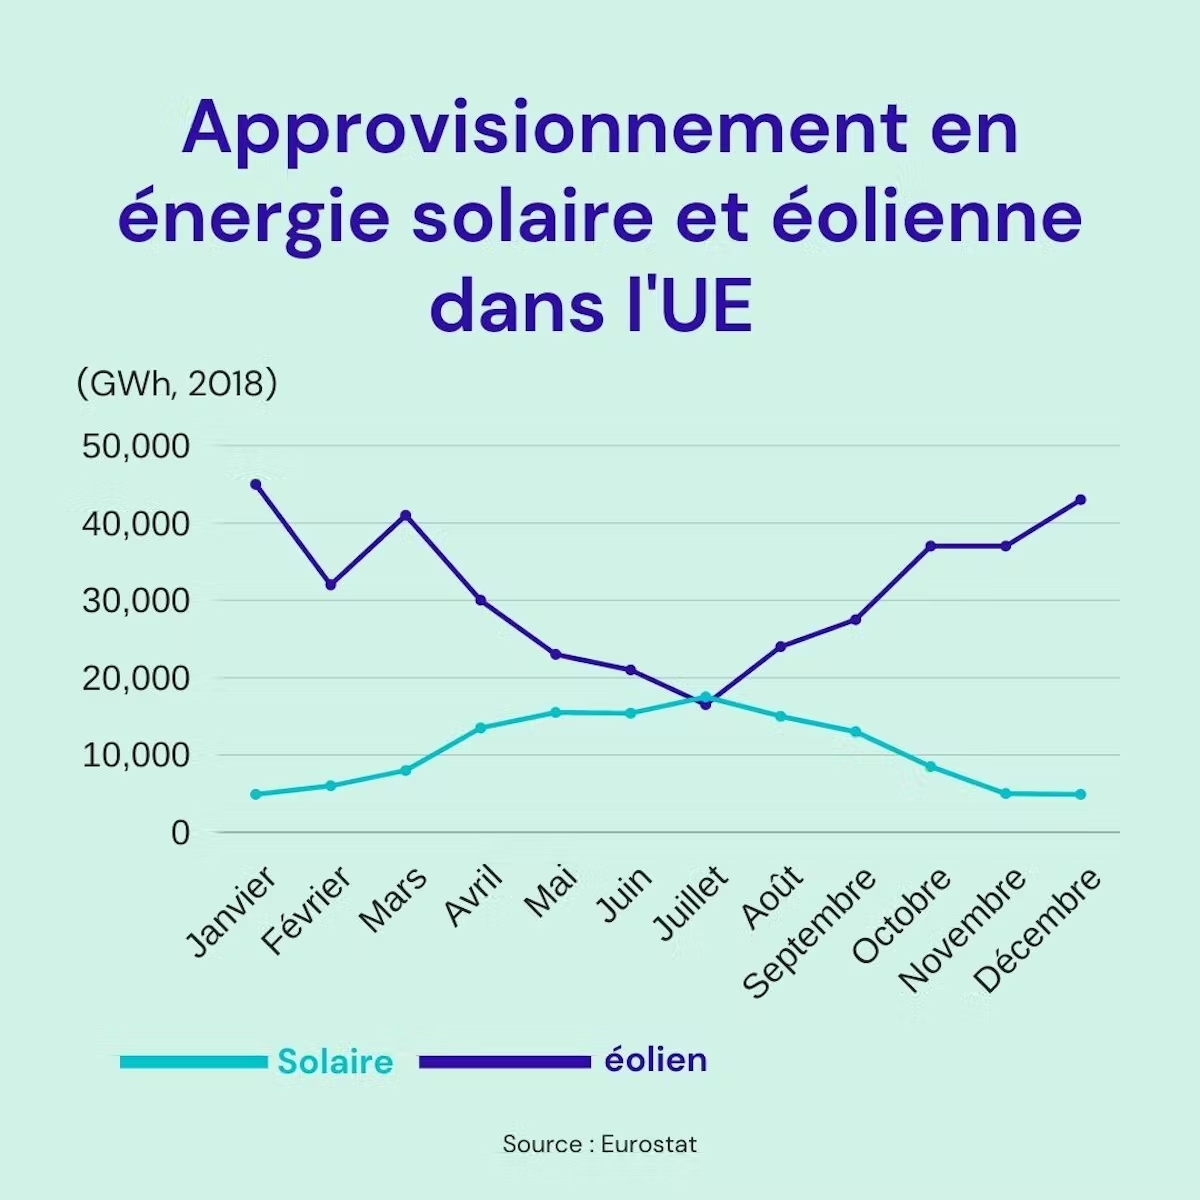 Approvisionnement en énergie solaire et éolienne dans l'Union Européenne